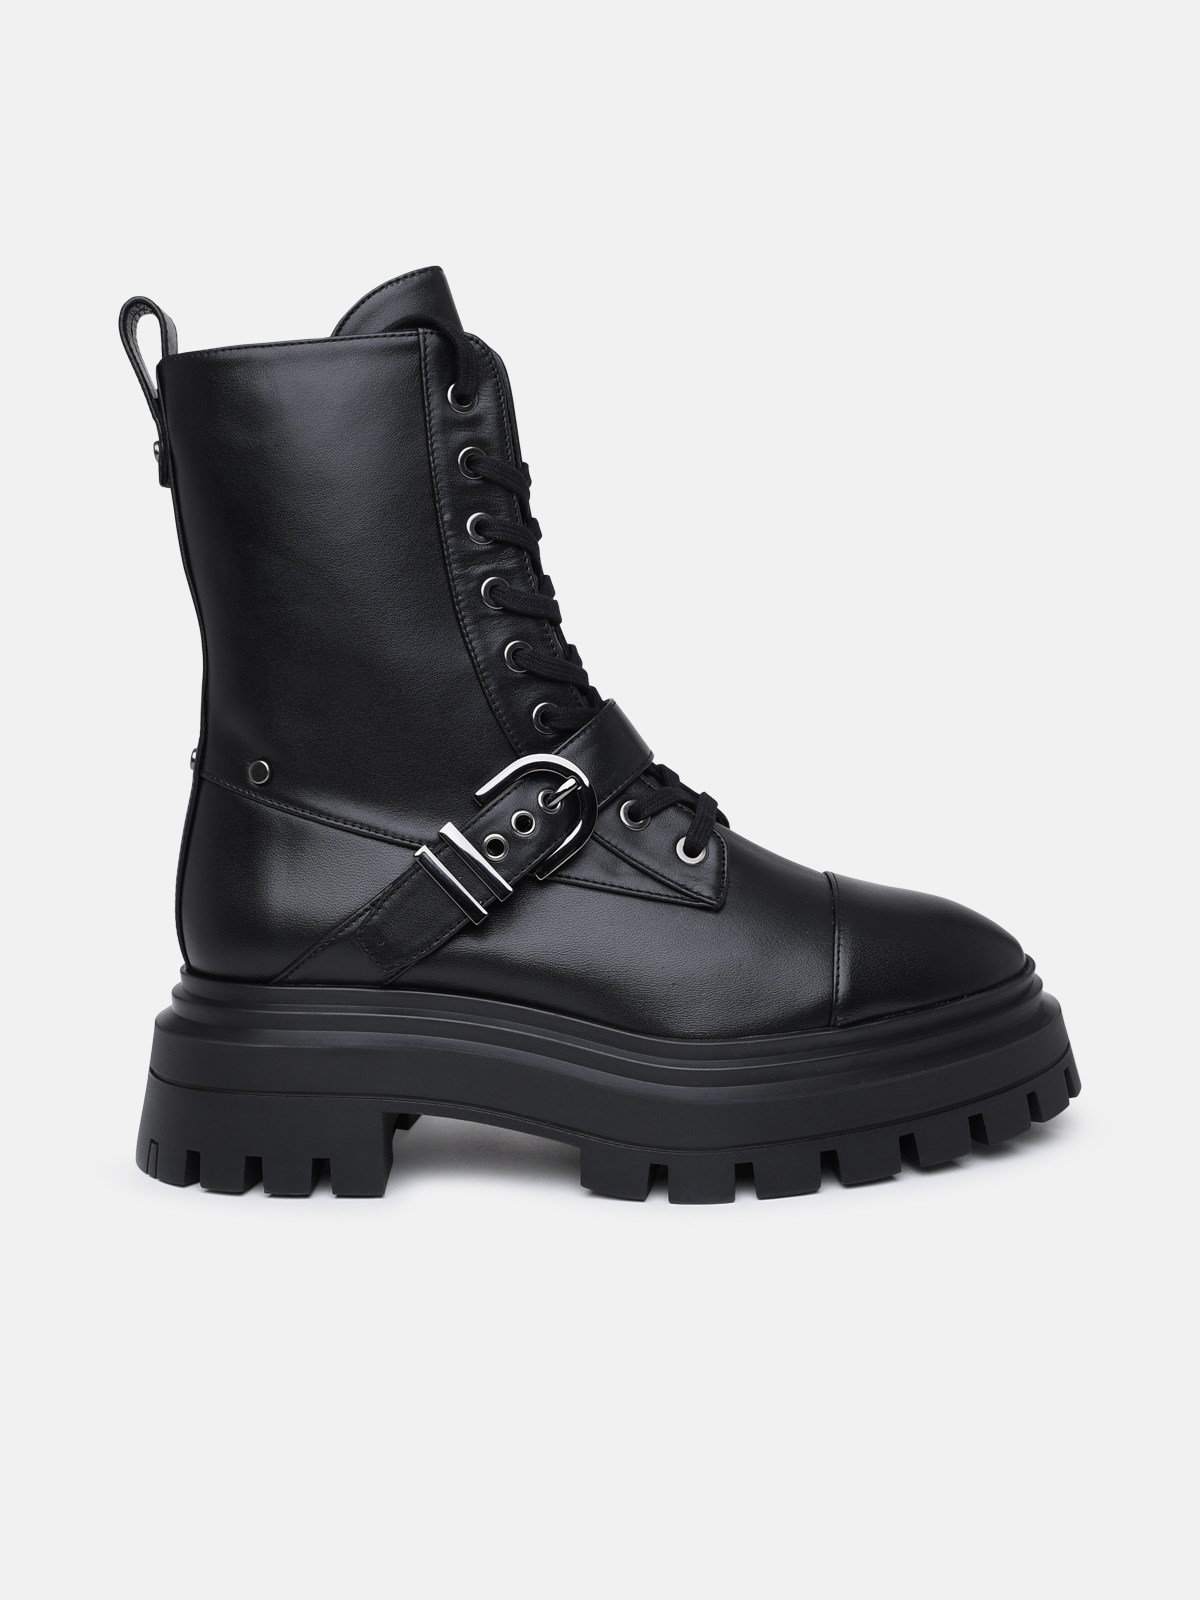 Stuart Weitzman Black Leather Maverick Boots